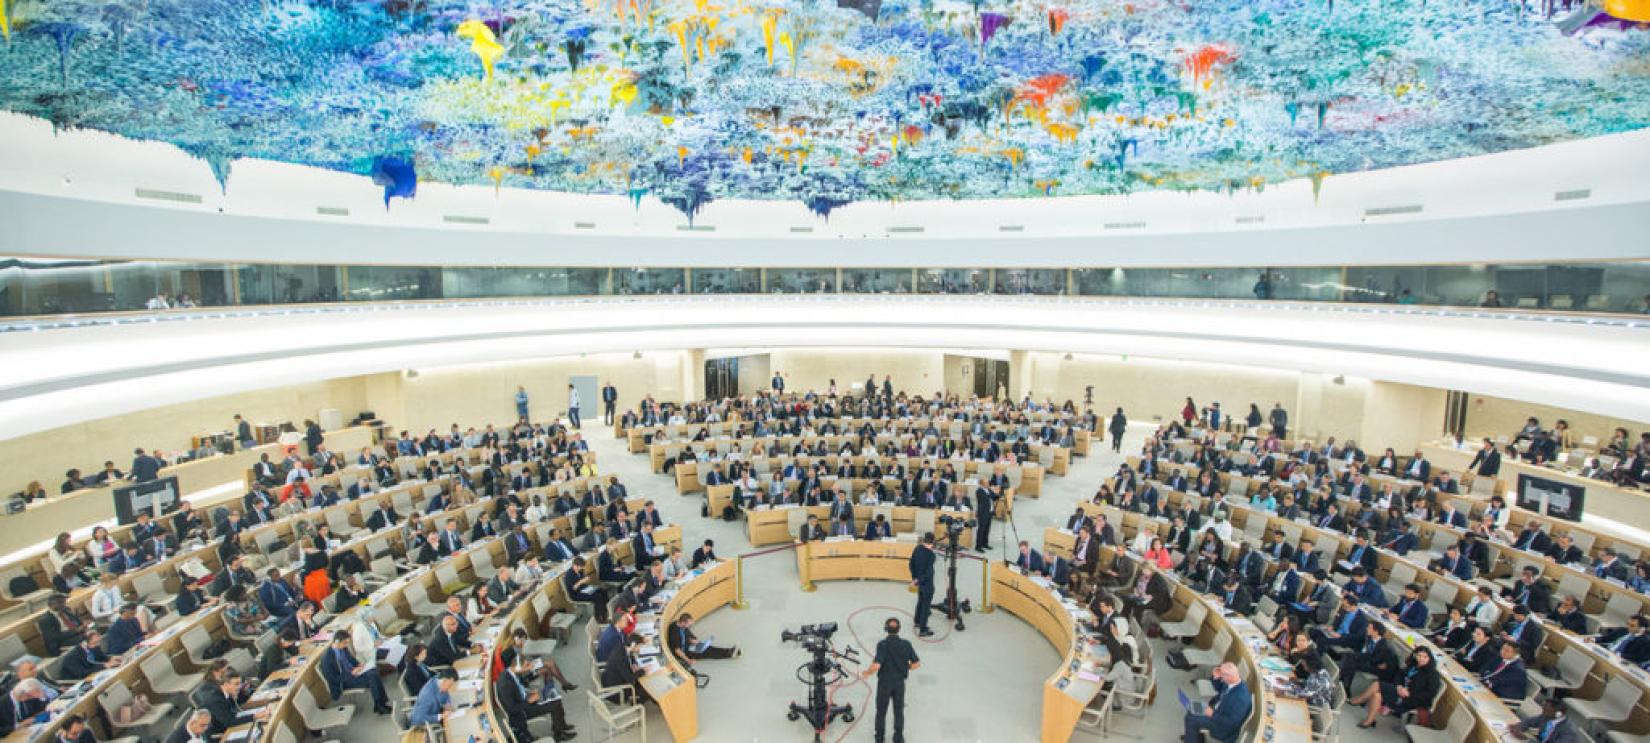 Sessão especial do Conselho de Direitos Humanos sobre a deterioração da situação nos territórios palestinos ocupados em 18 de maio em Genebra. Foto: ONU/Elma Okic